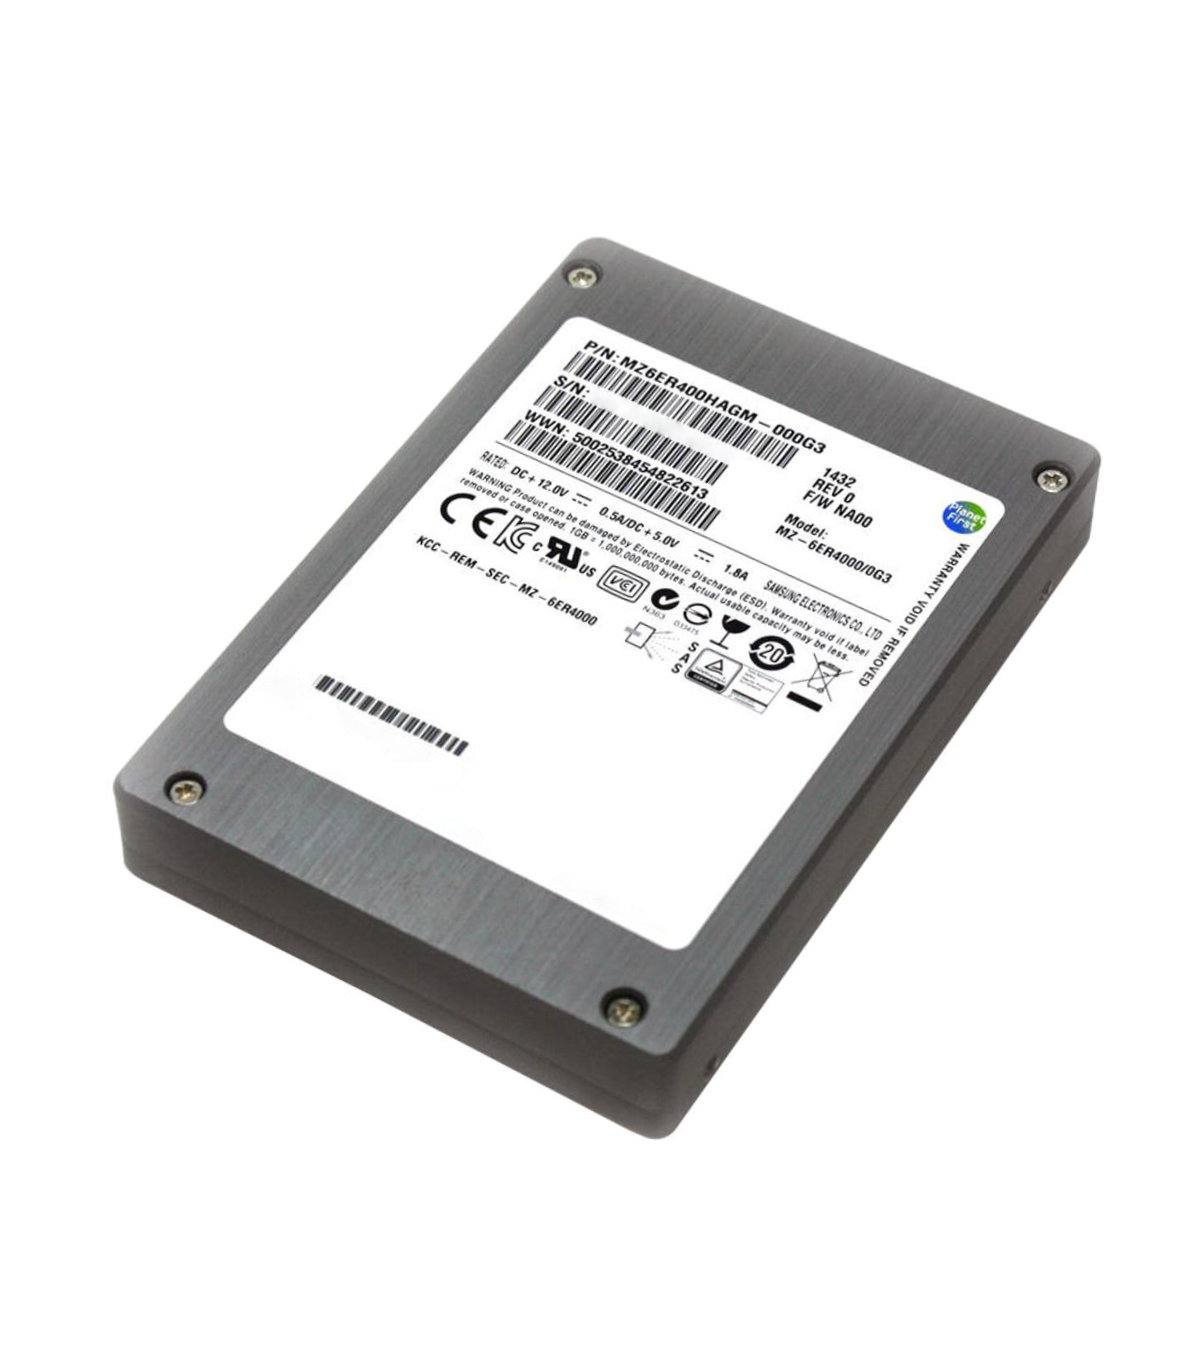 DYSK SAMSUNG 400GB 2,5" SAS SSD X438A-R6, MZ6ER400HAGM-000G3, MZ-6ER4000/0G3